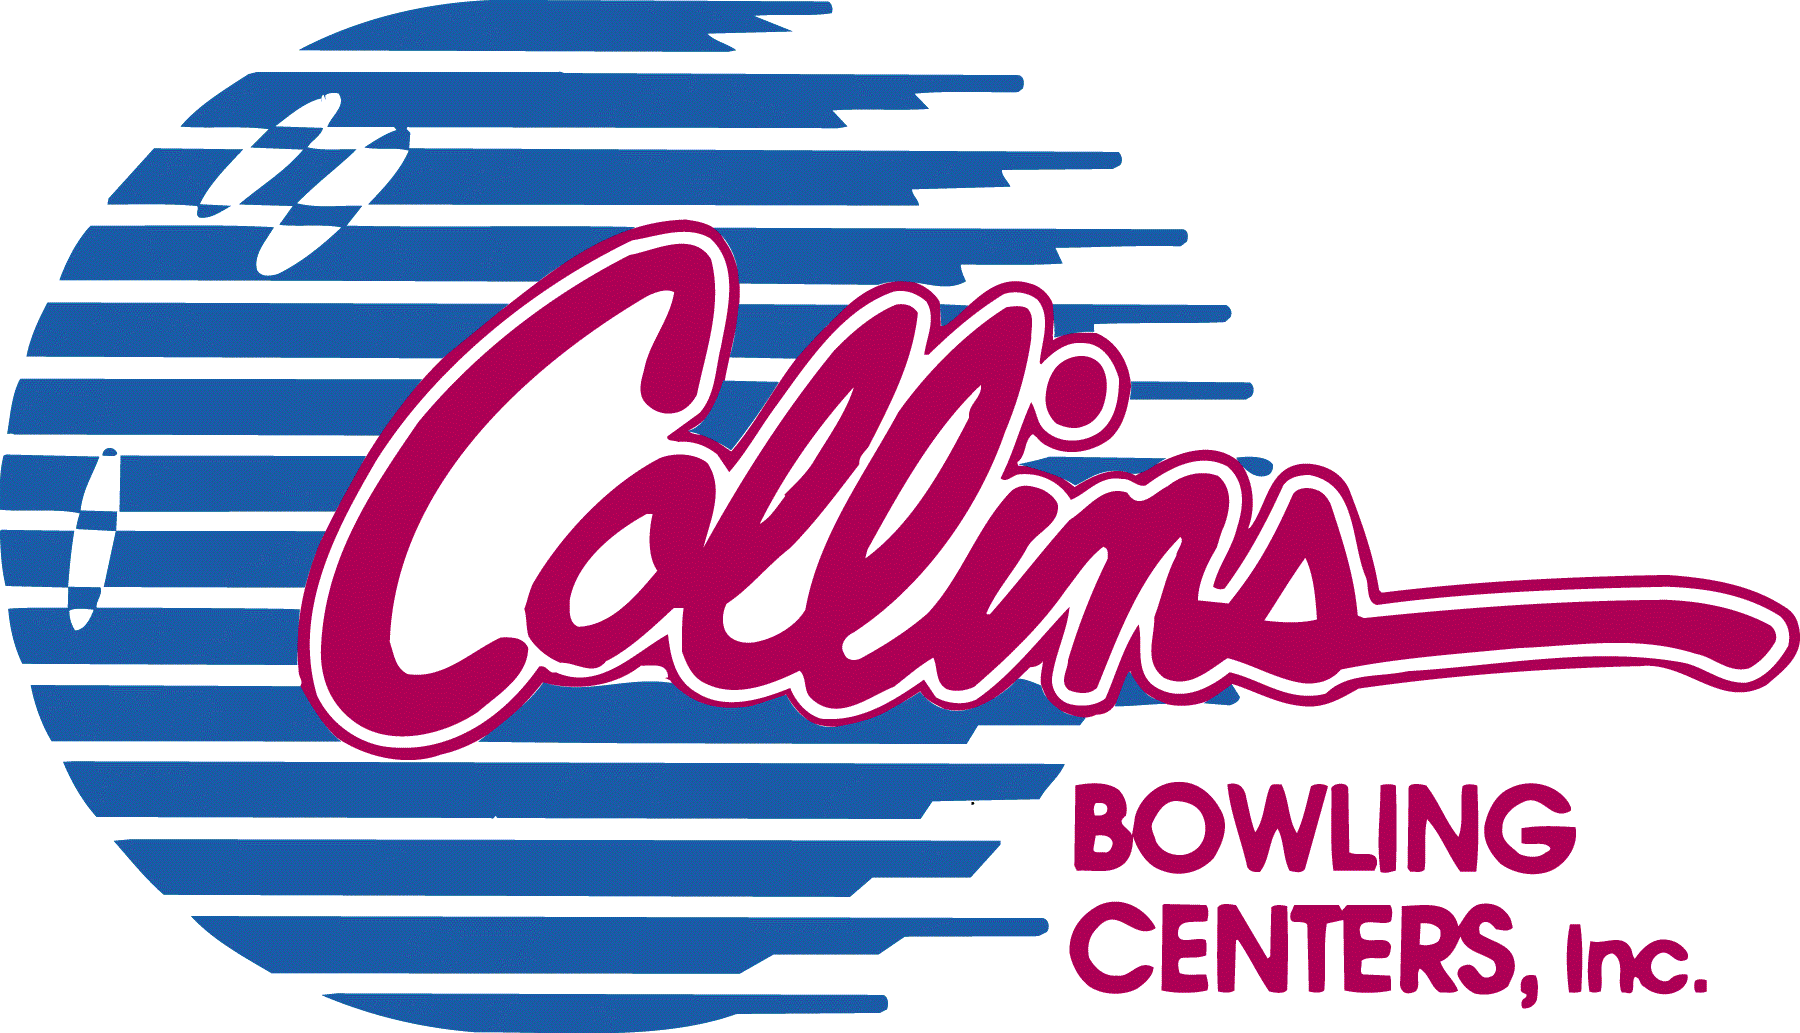 Bowlingsale.com